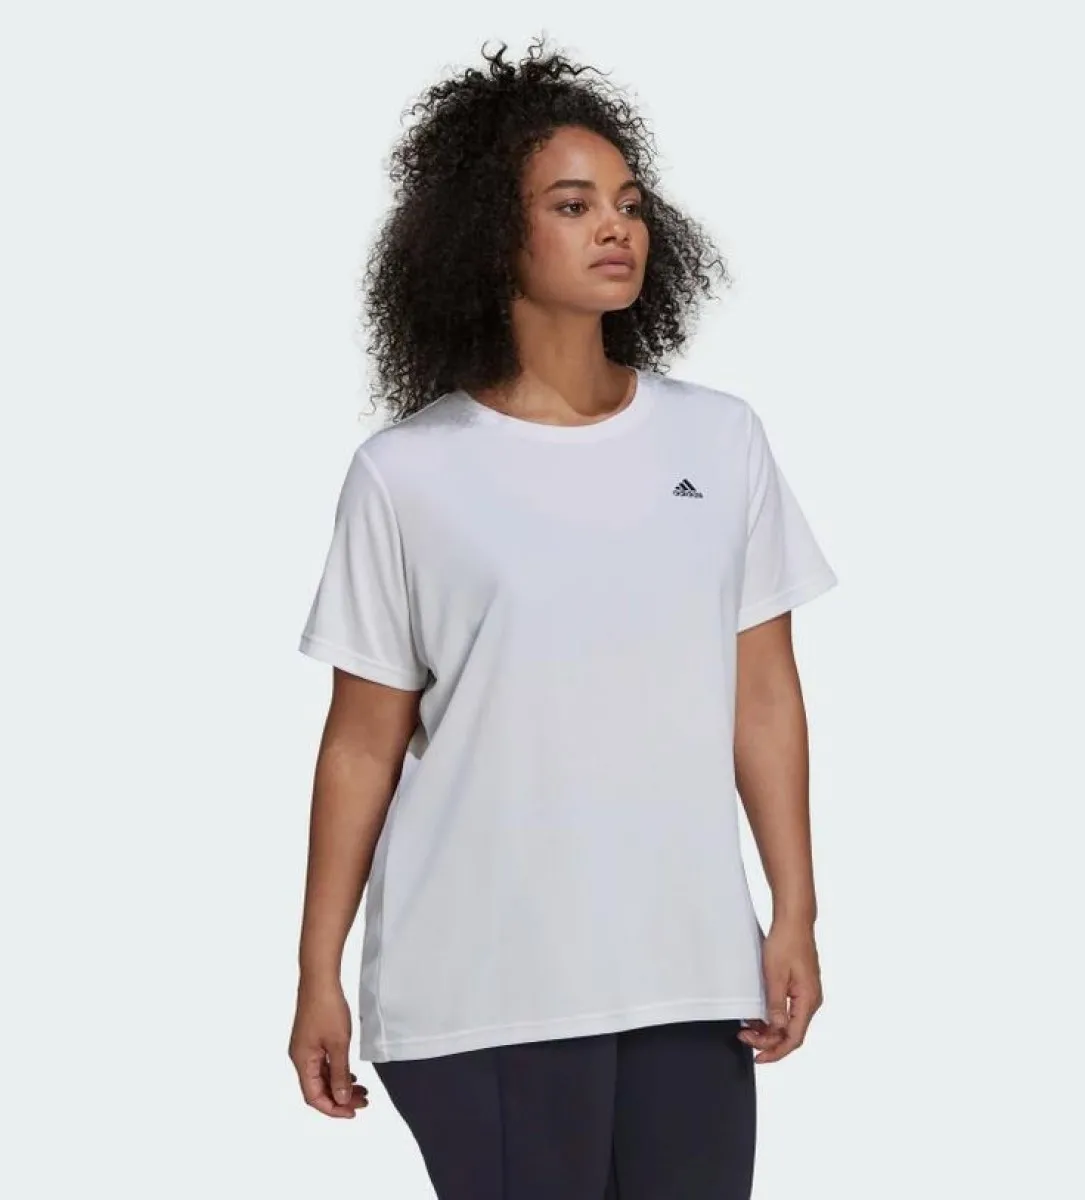 Camiseta adidas oversize blanca para mujer